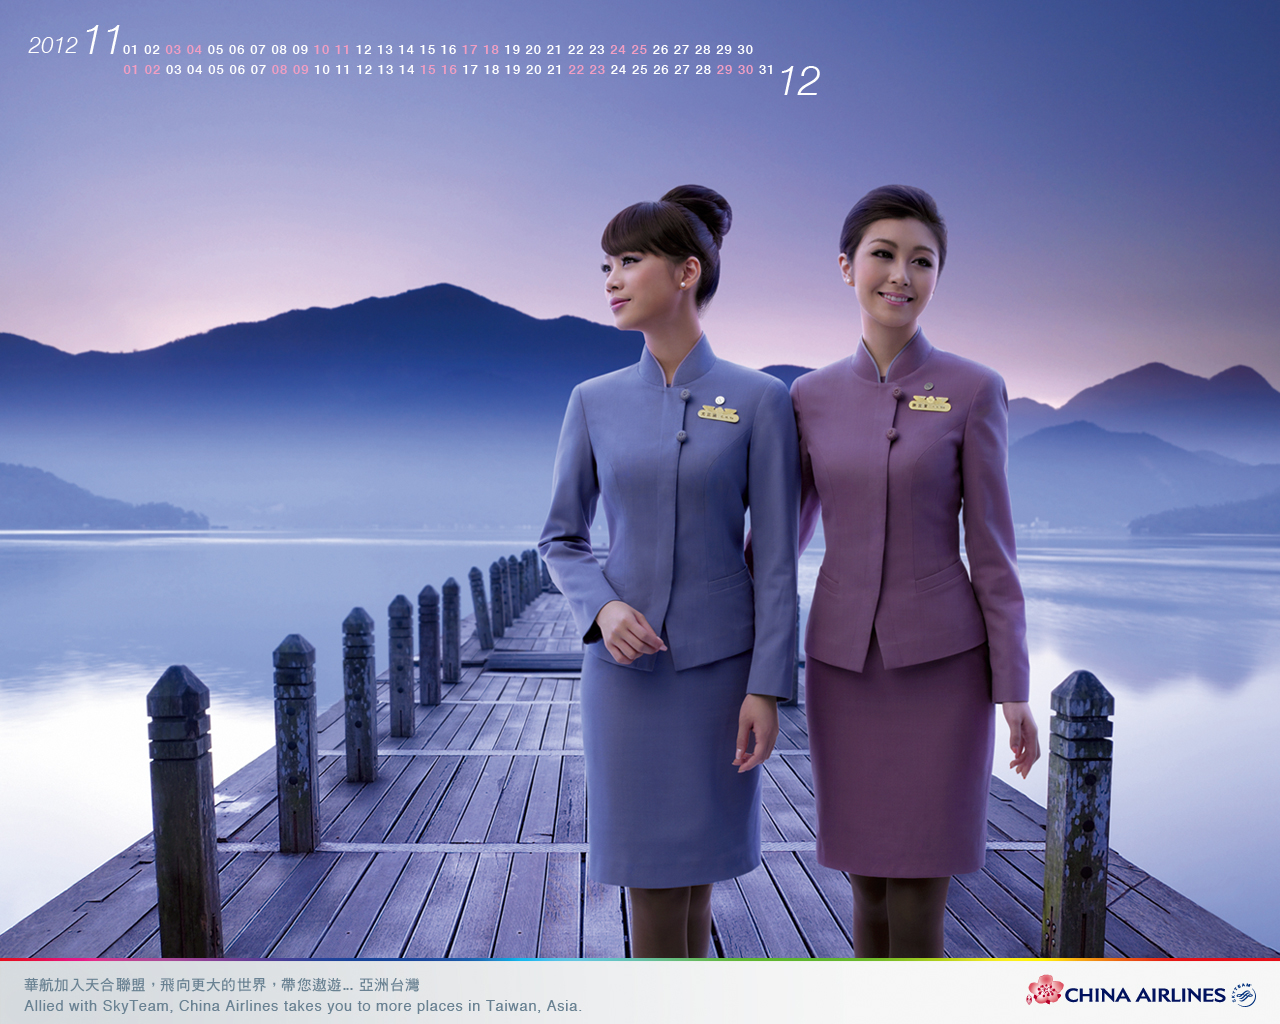 flight attendant wallpaper,sky,standing,digital compositing,white collar worker,screenshot